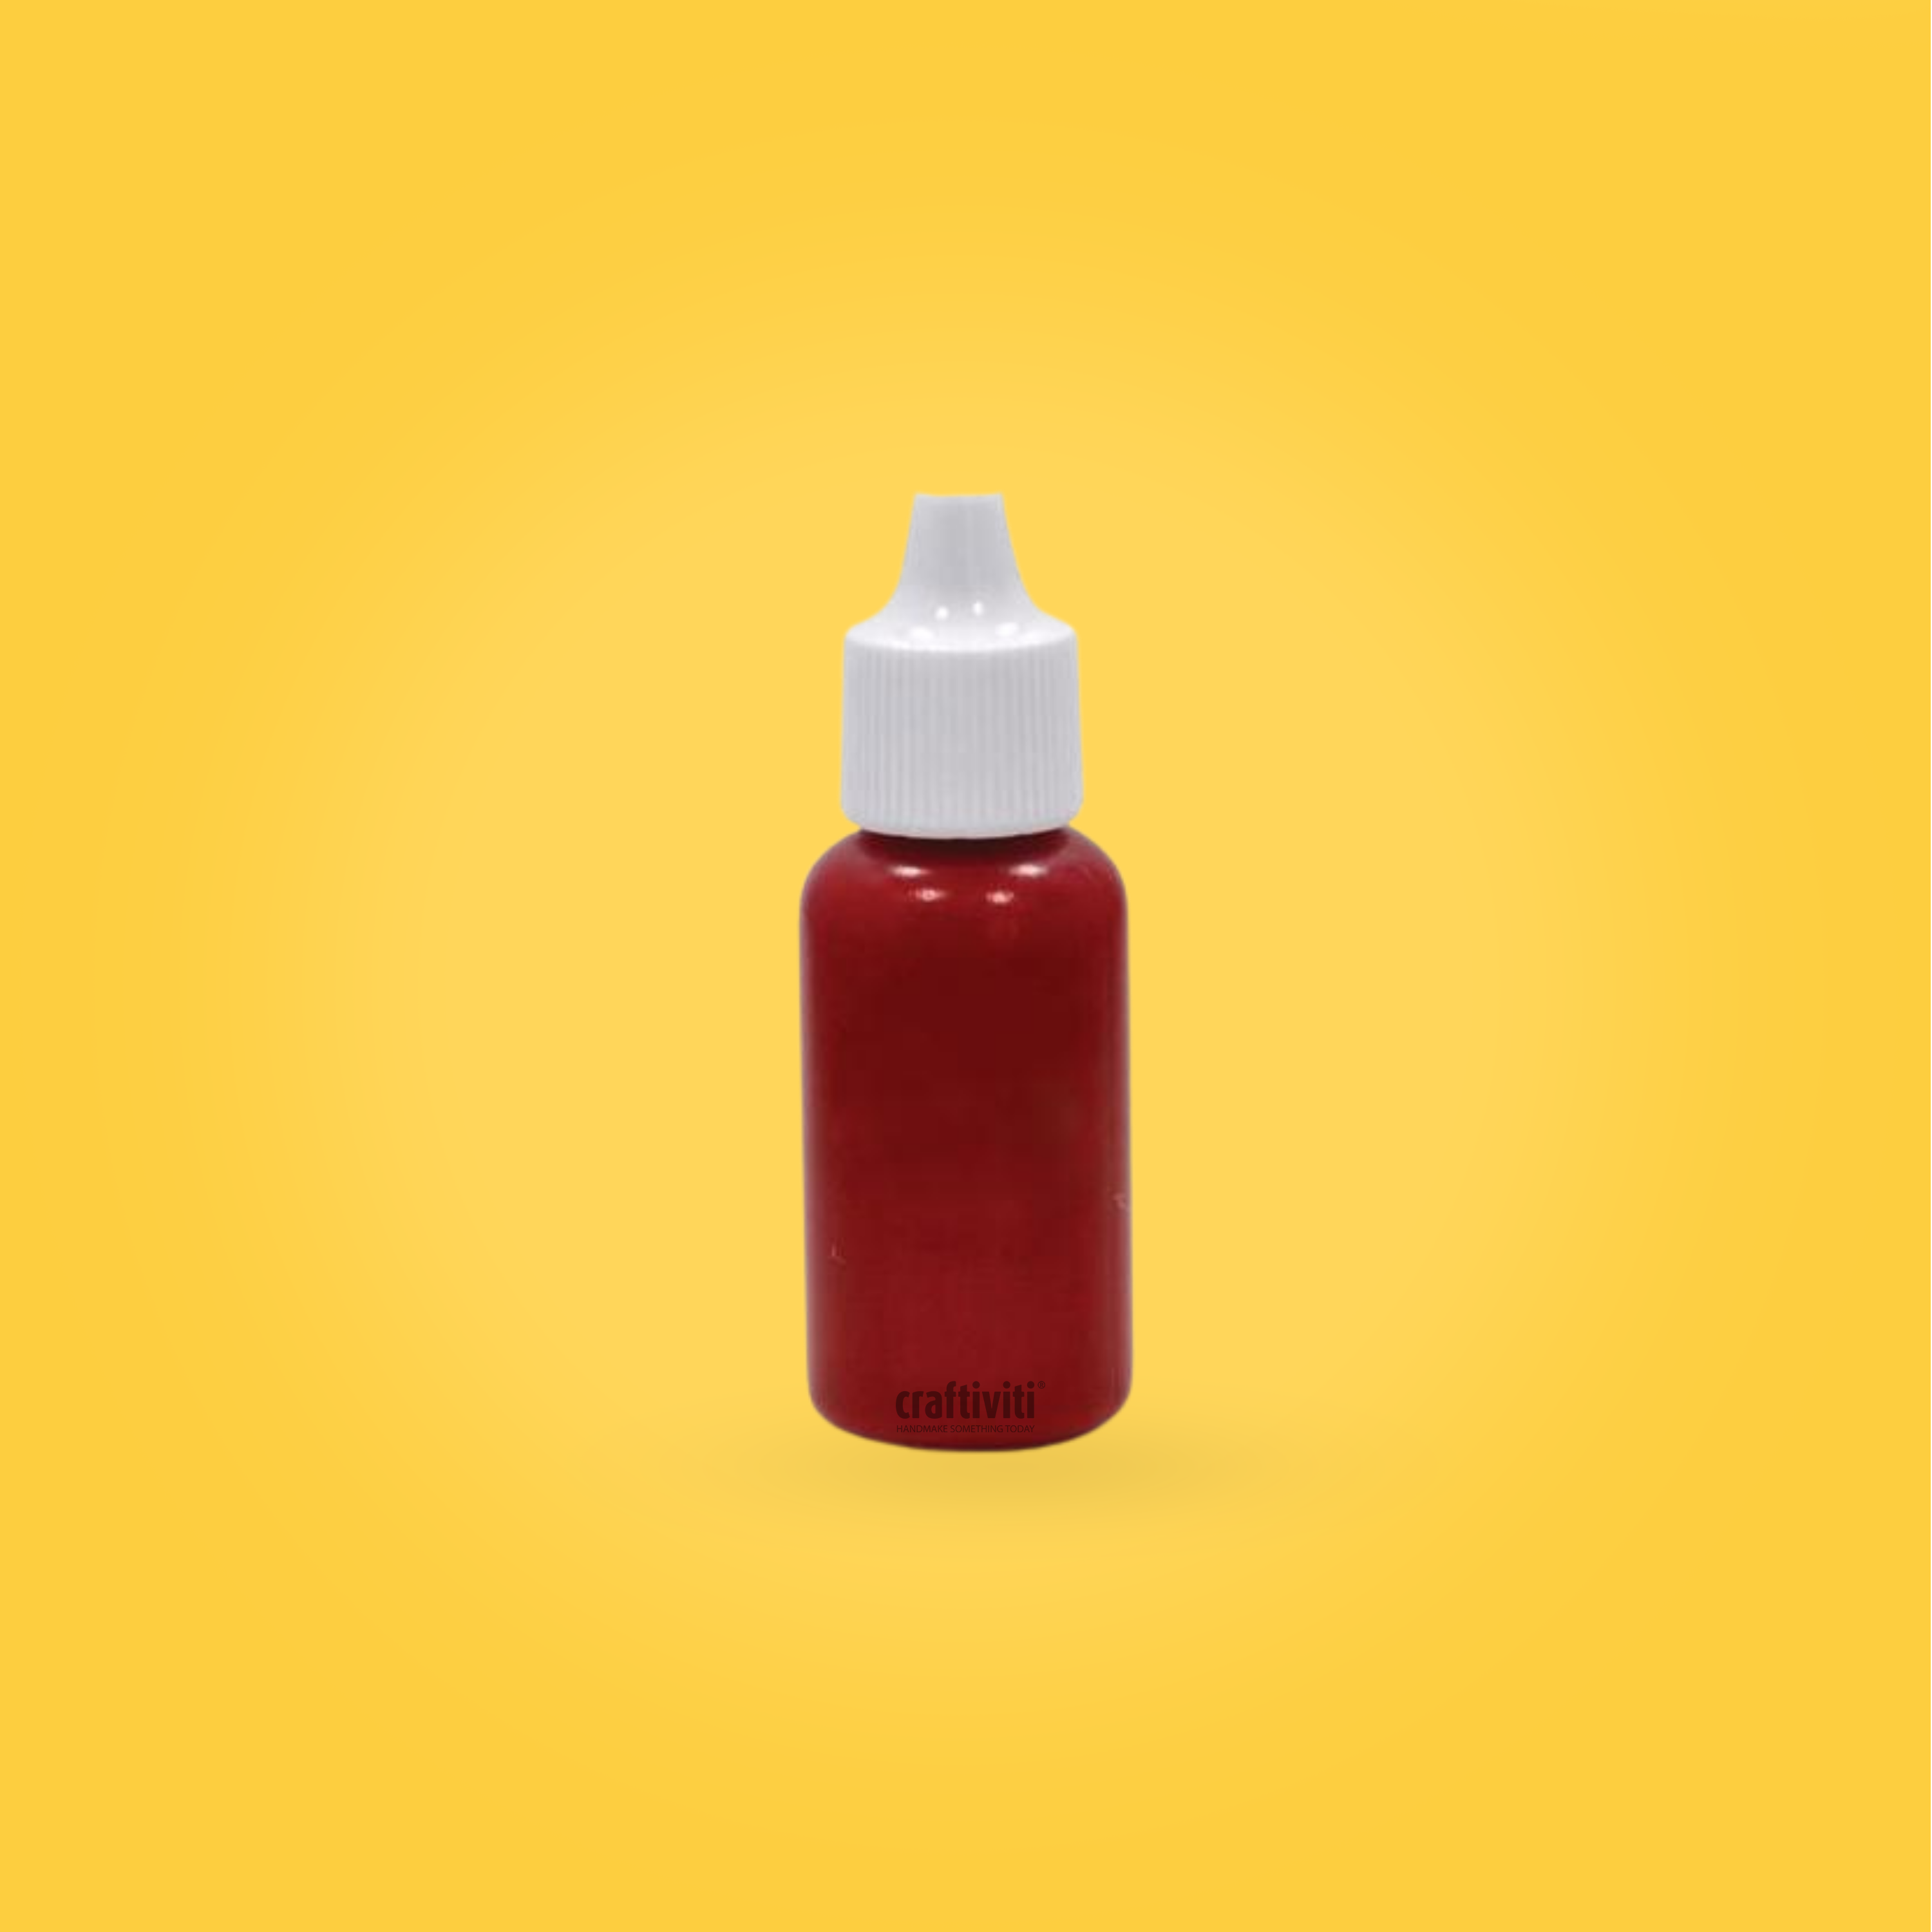 Lip Liquid 15ml - Red 30 Ingredients - Craftiviti